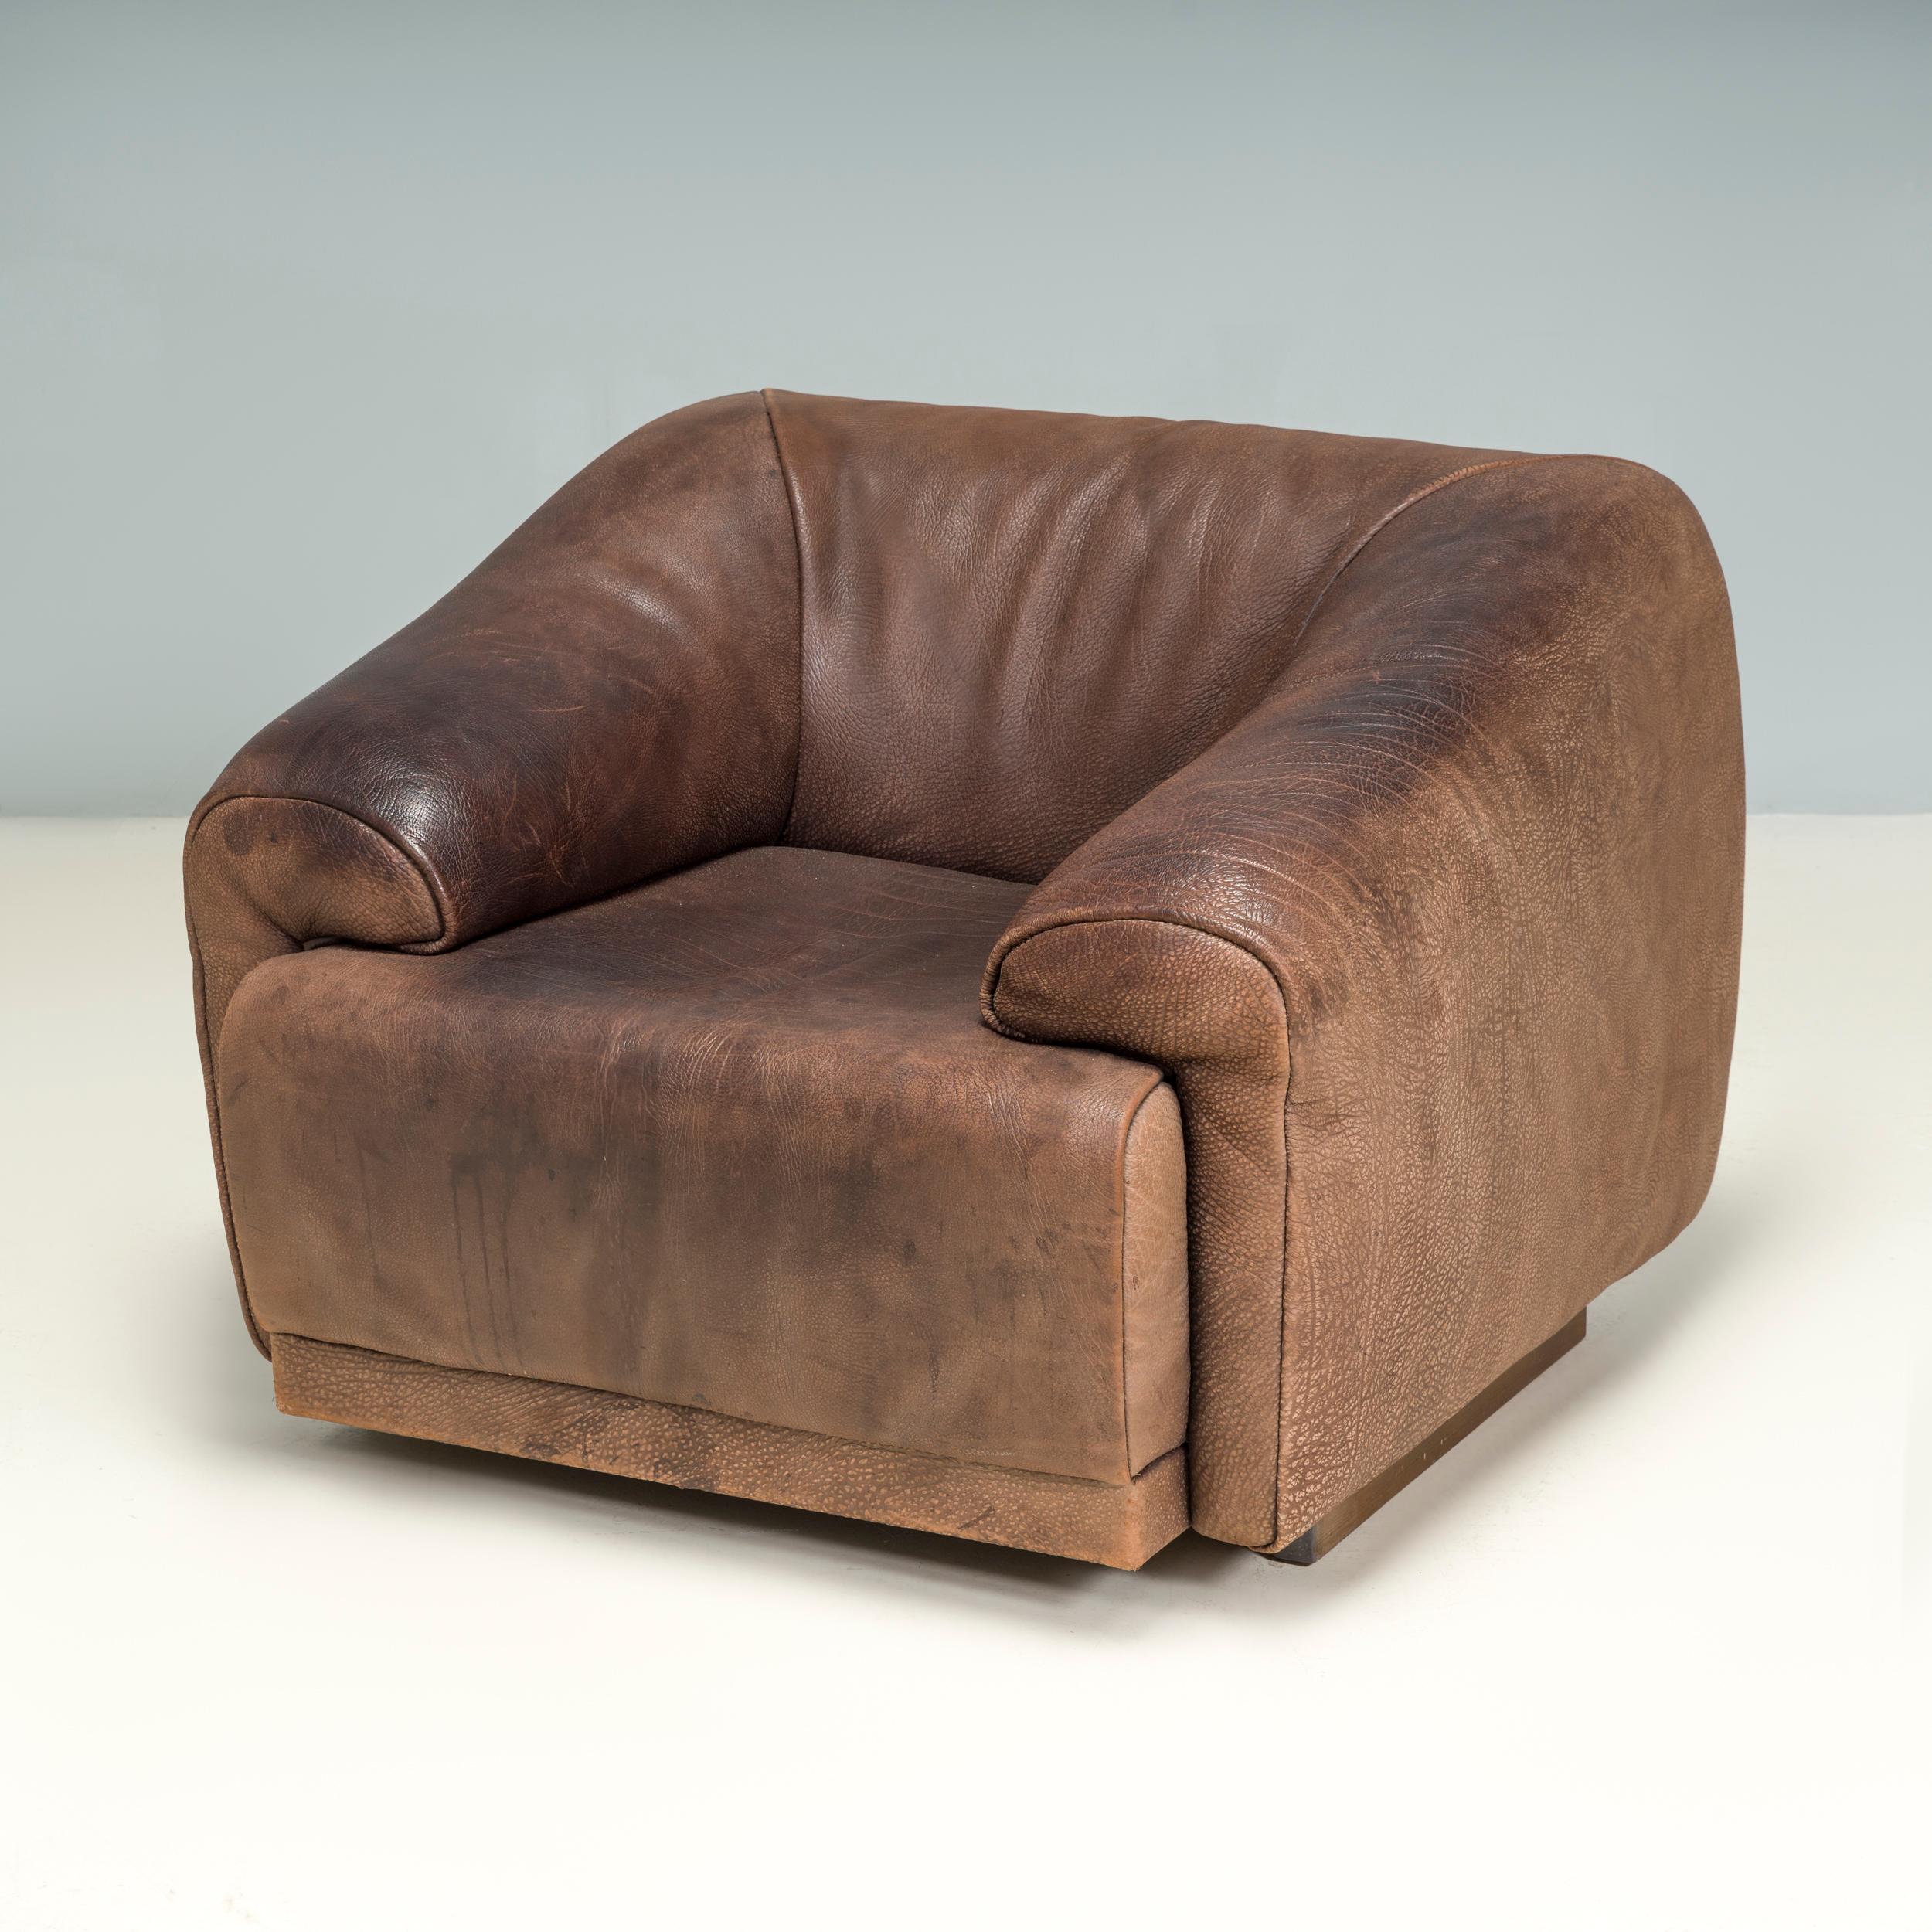 Die 1965 gegründete Möbelfirma De Sede ist seither vor allem für ihr hochwertiges Lederdesign und ihre kultigen Sofas und Sessel bekannt.

Dieser vollständig mit weichem braunen Büffelleder gepolsterte Sessel aus den 1970er Jahren hat eine